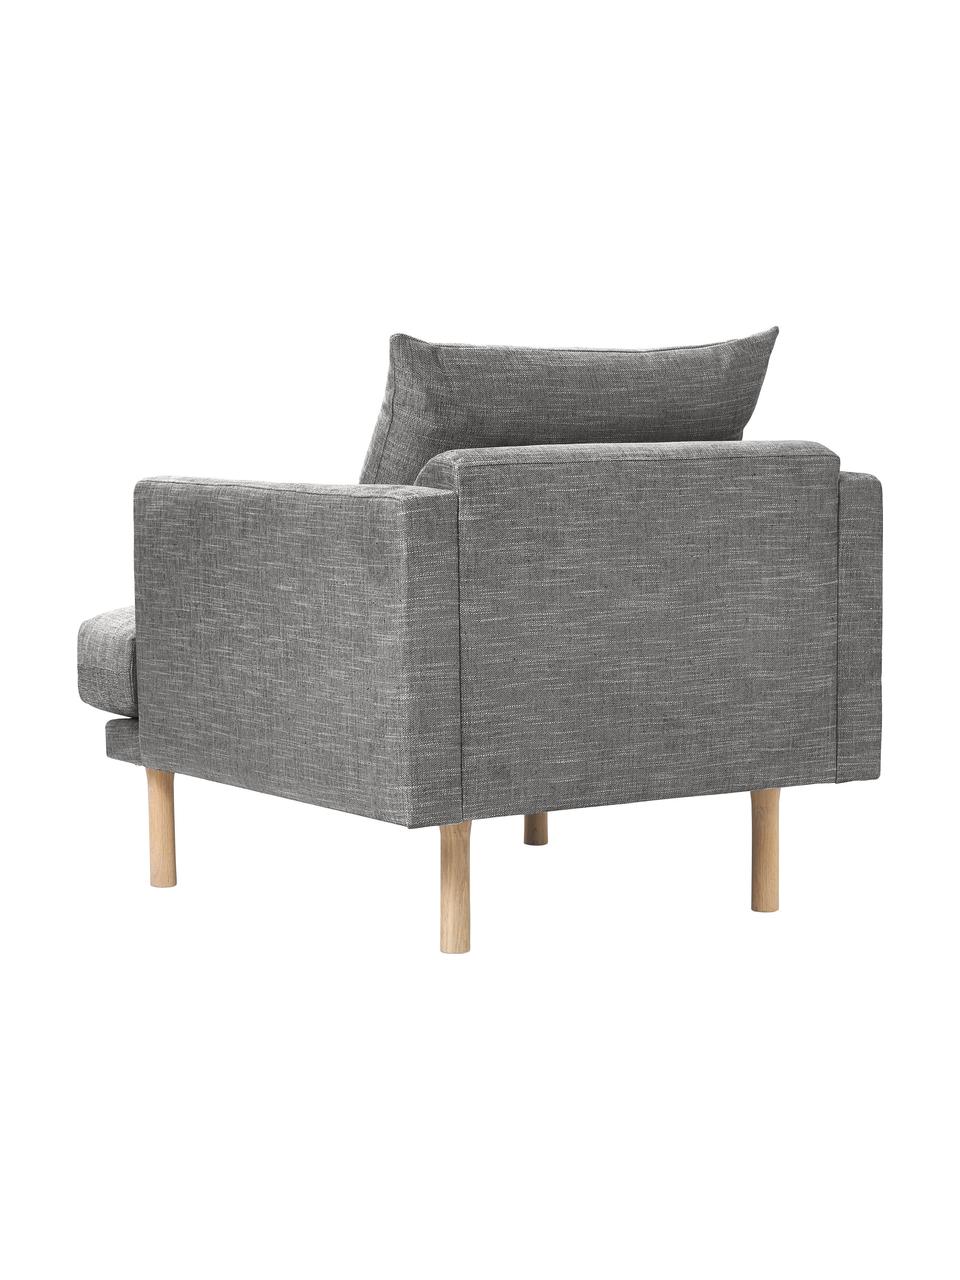 Sofa-Sessel Adrian, Bezug: 47 % Viskose, 23 % Baumwo, Gestell: Sperrholz, Füße: Eichenholz, geölt, Webstoff Dunkelgrau, B 90 x H 79 cm